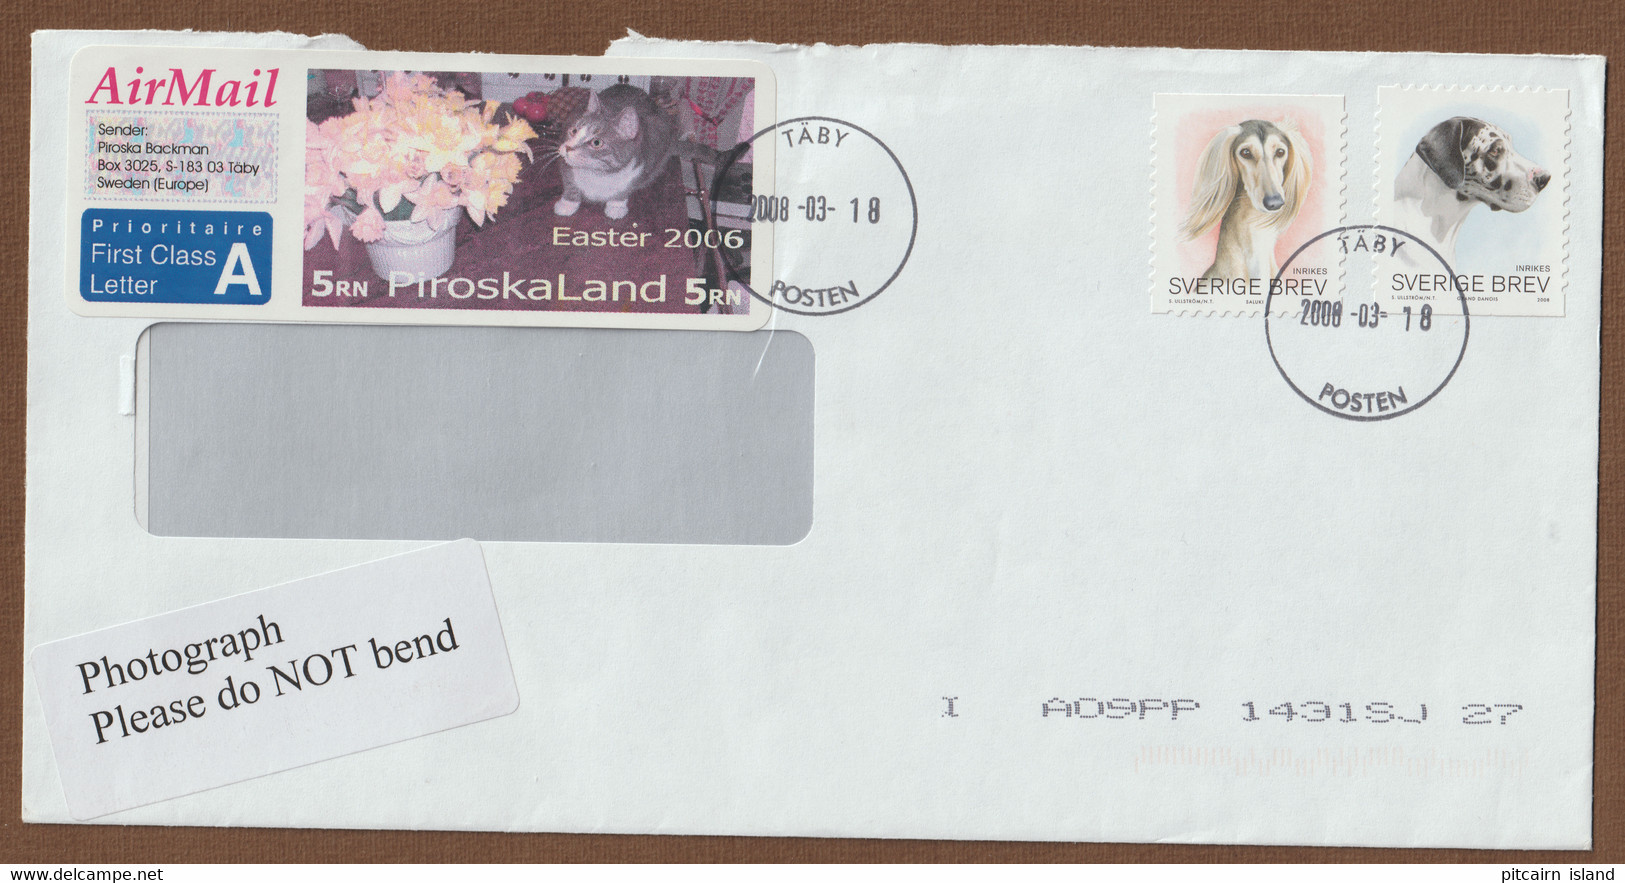 Piroskaland, Sverige Brav, Sweden Letter 2008-03-18 - Lettres & Documents